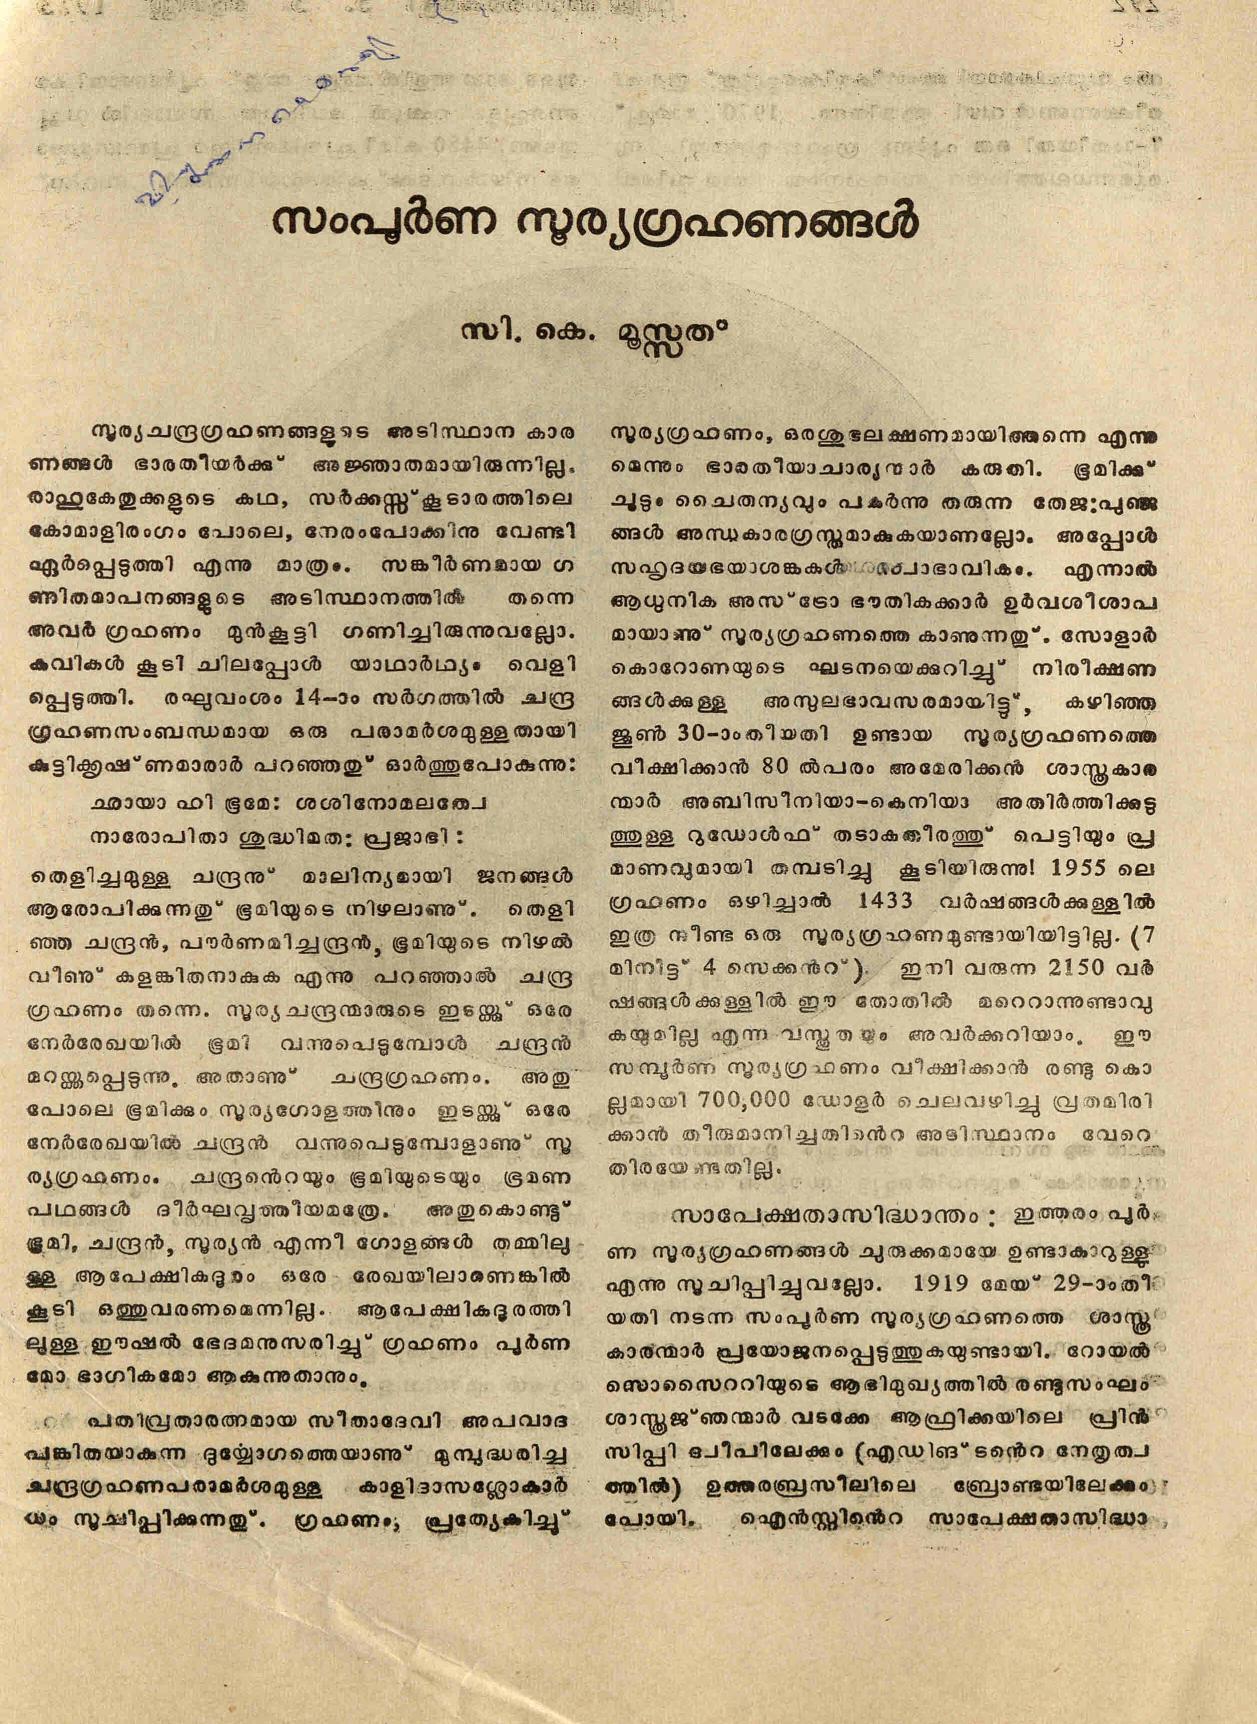 1973 - സമ്പൂർണ്ണ സൂര്യഗ്രഹണങ്ങൾ - സി. കെ. മൂസ്സത്